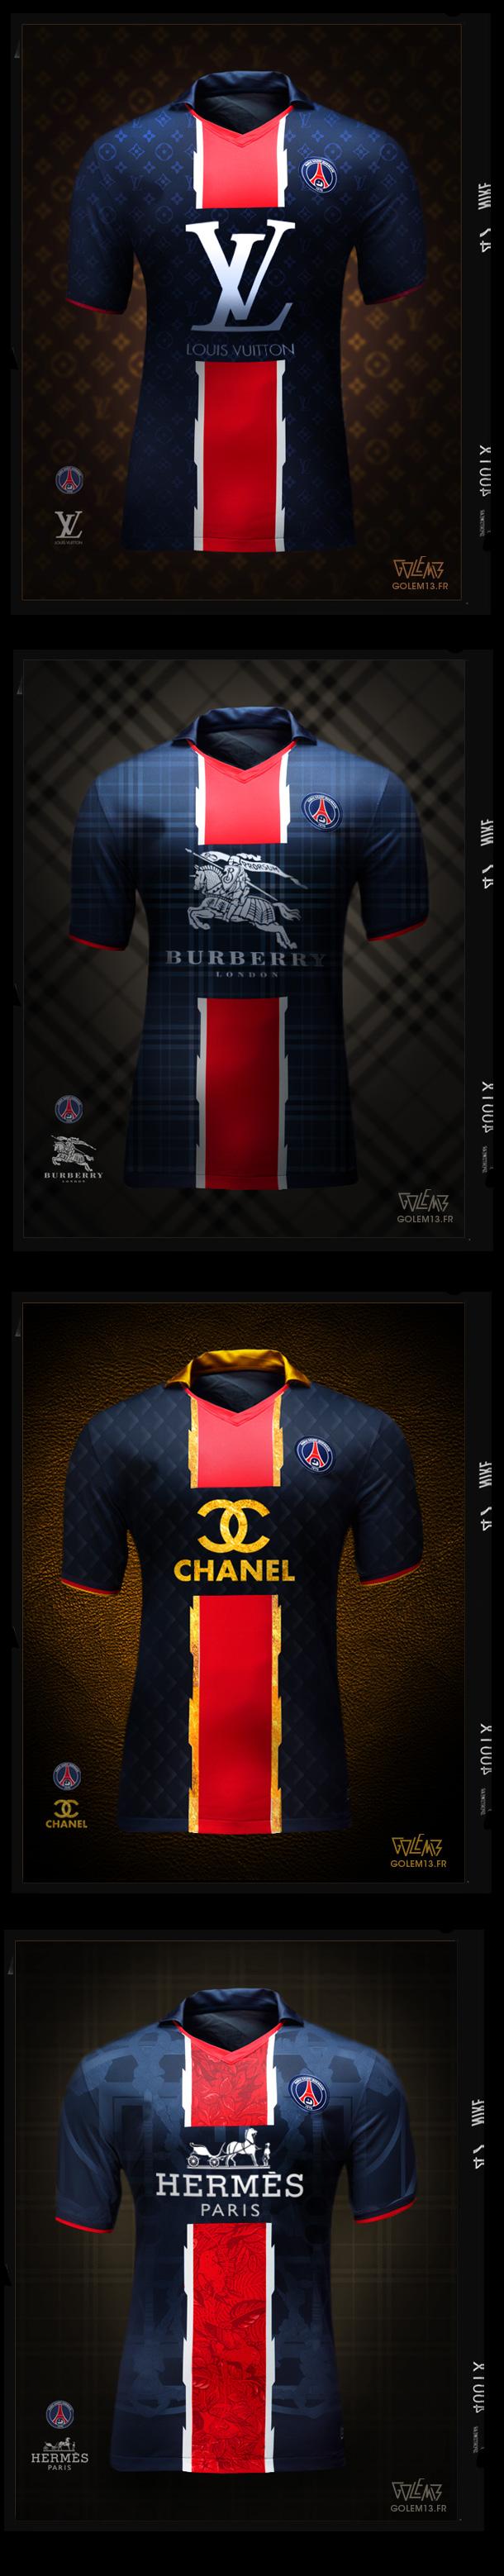 Les nouveaux maillots du PSG avec l’arrivée de Beckham ?